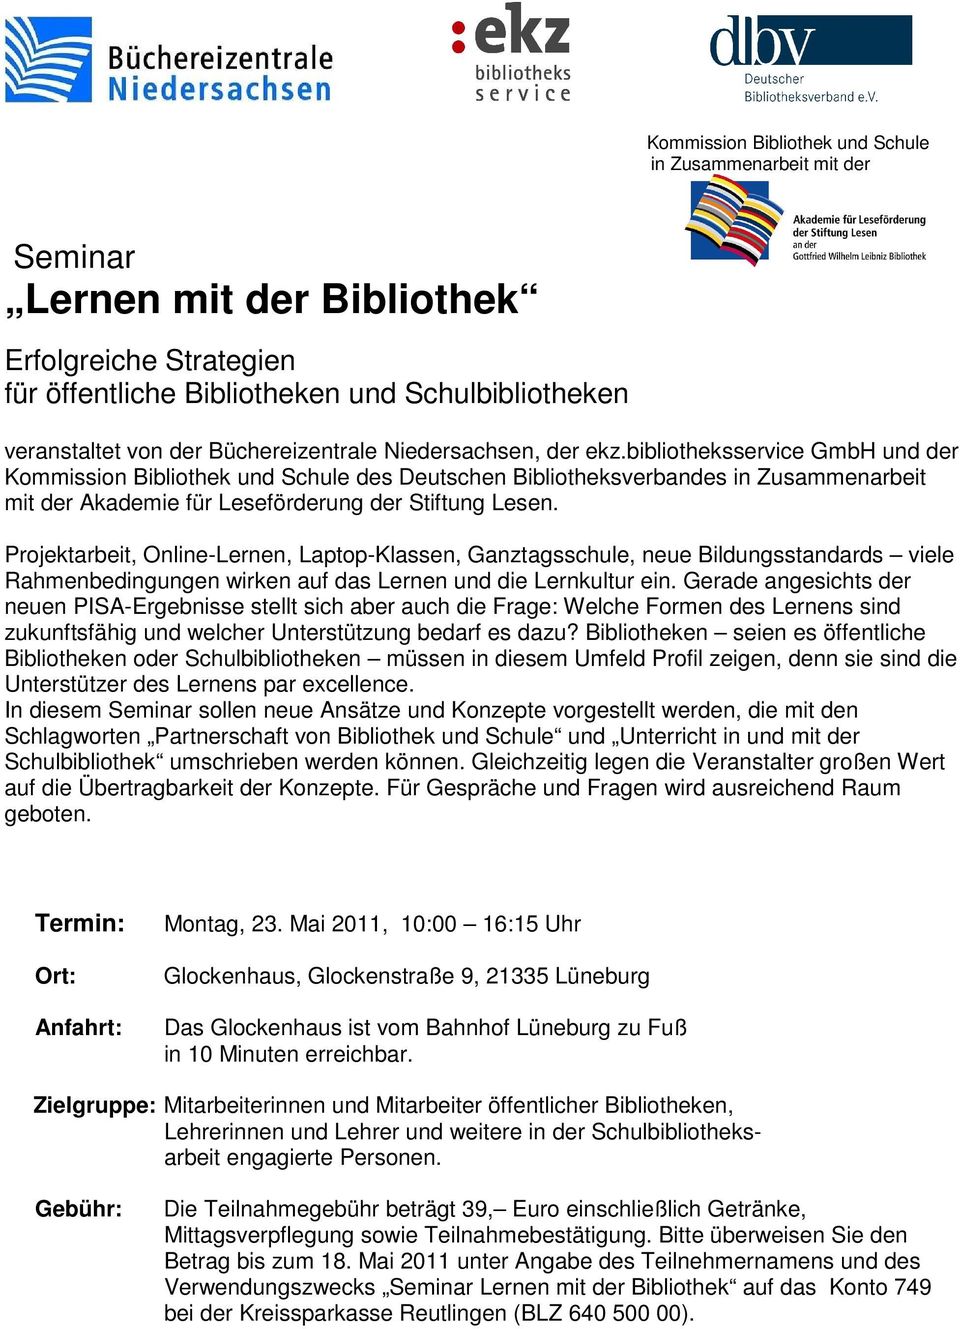 bibliotheksservice GmbH und der Kommission Bibliothek und Schule des Deutschen Bibliotheksverbandes in Zusammenarbeit mit der Akademie für Leseförderung der Stiftung Lesen.